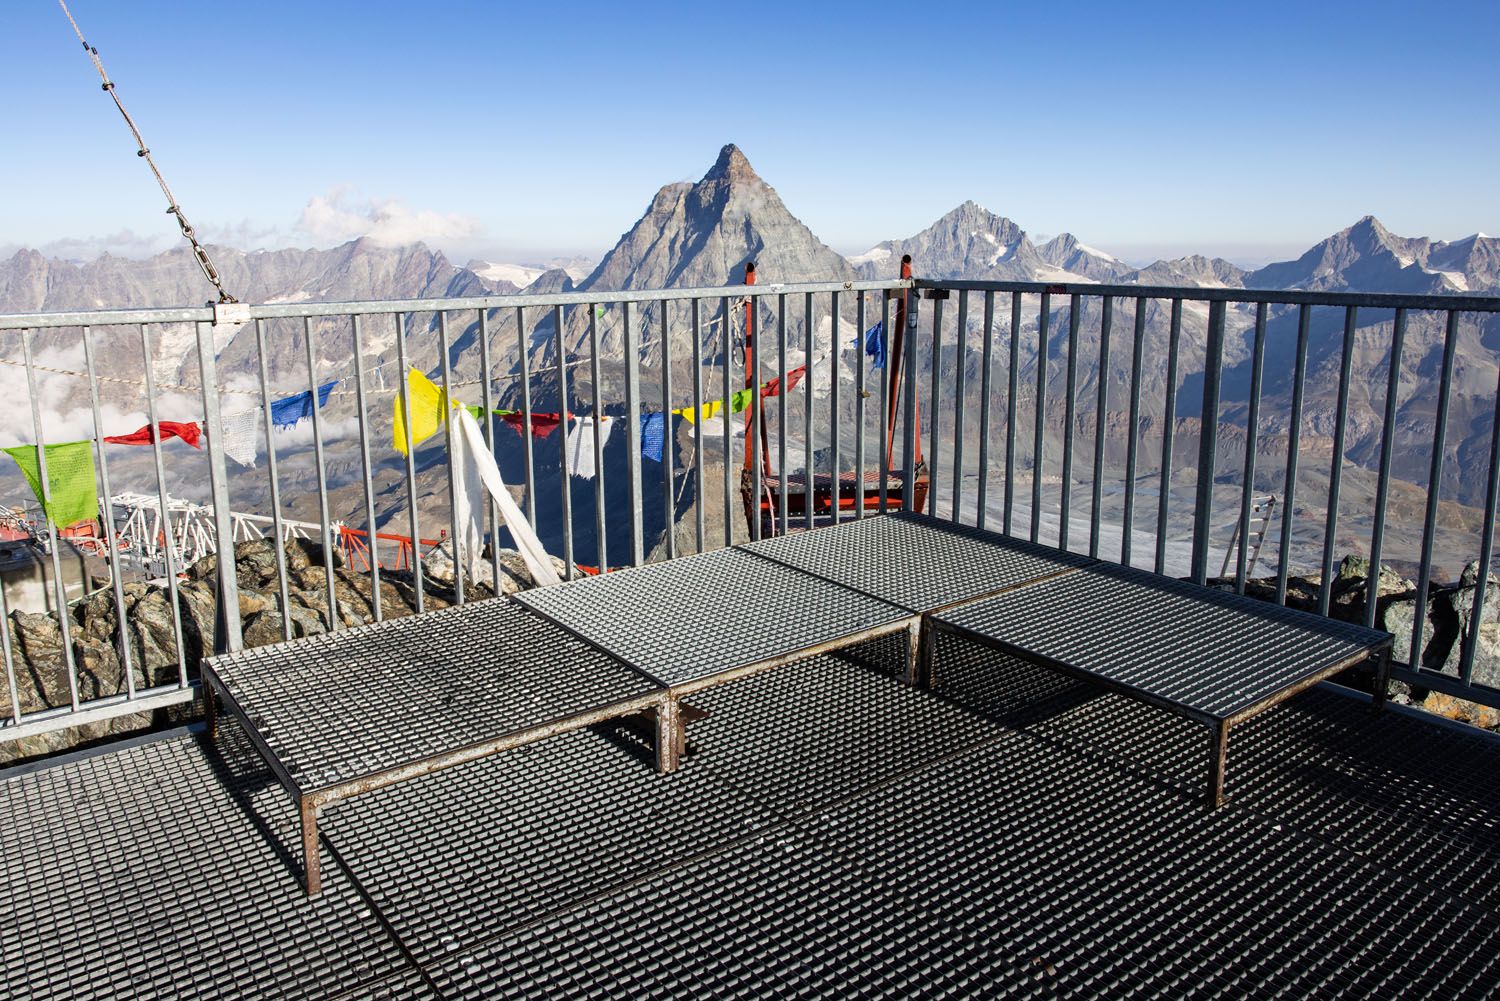 Matterhorn Viewing Platform